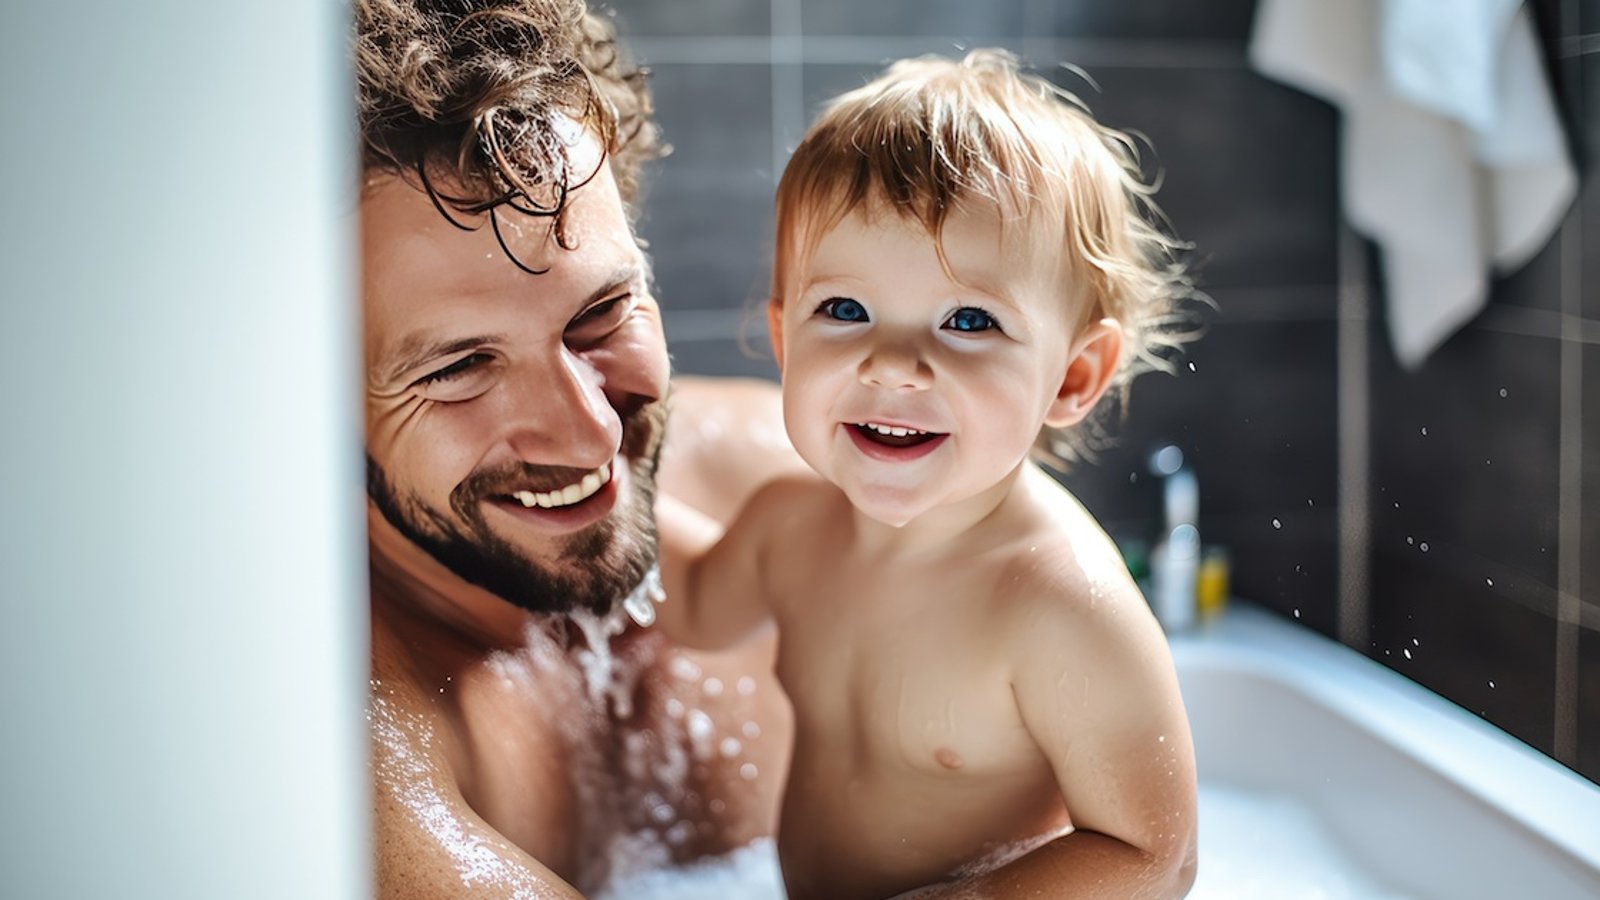 Quand les parents devraient-ils arrêter de prendre un bain avec leur enfant?